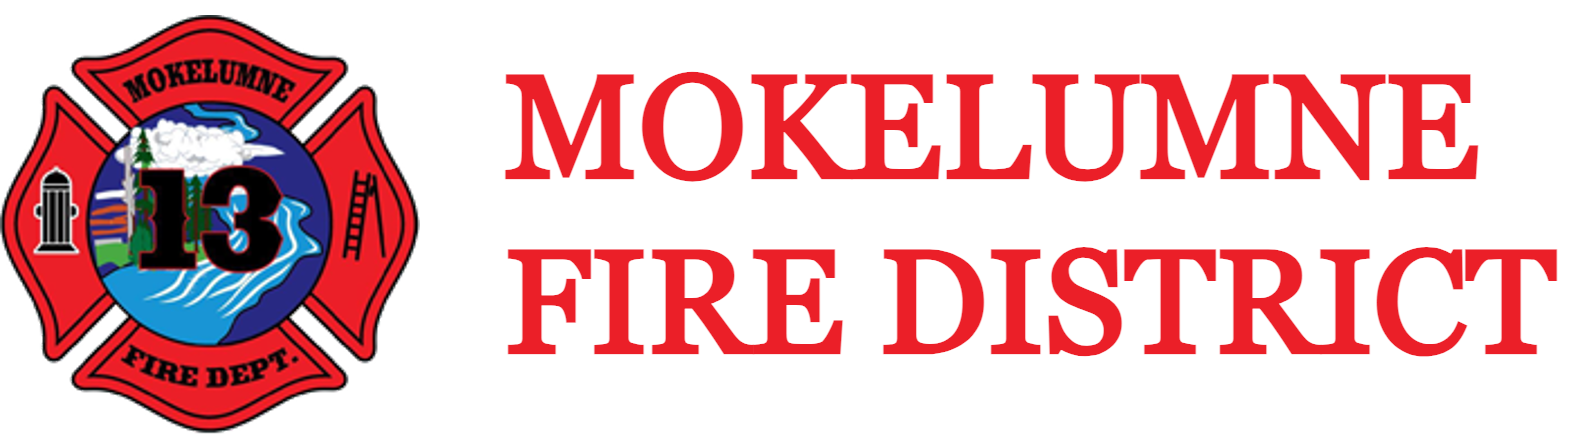 Mokelumne Fire District.png